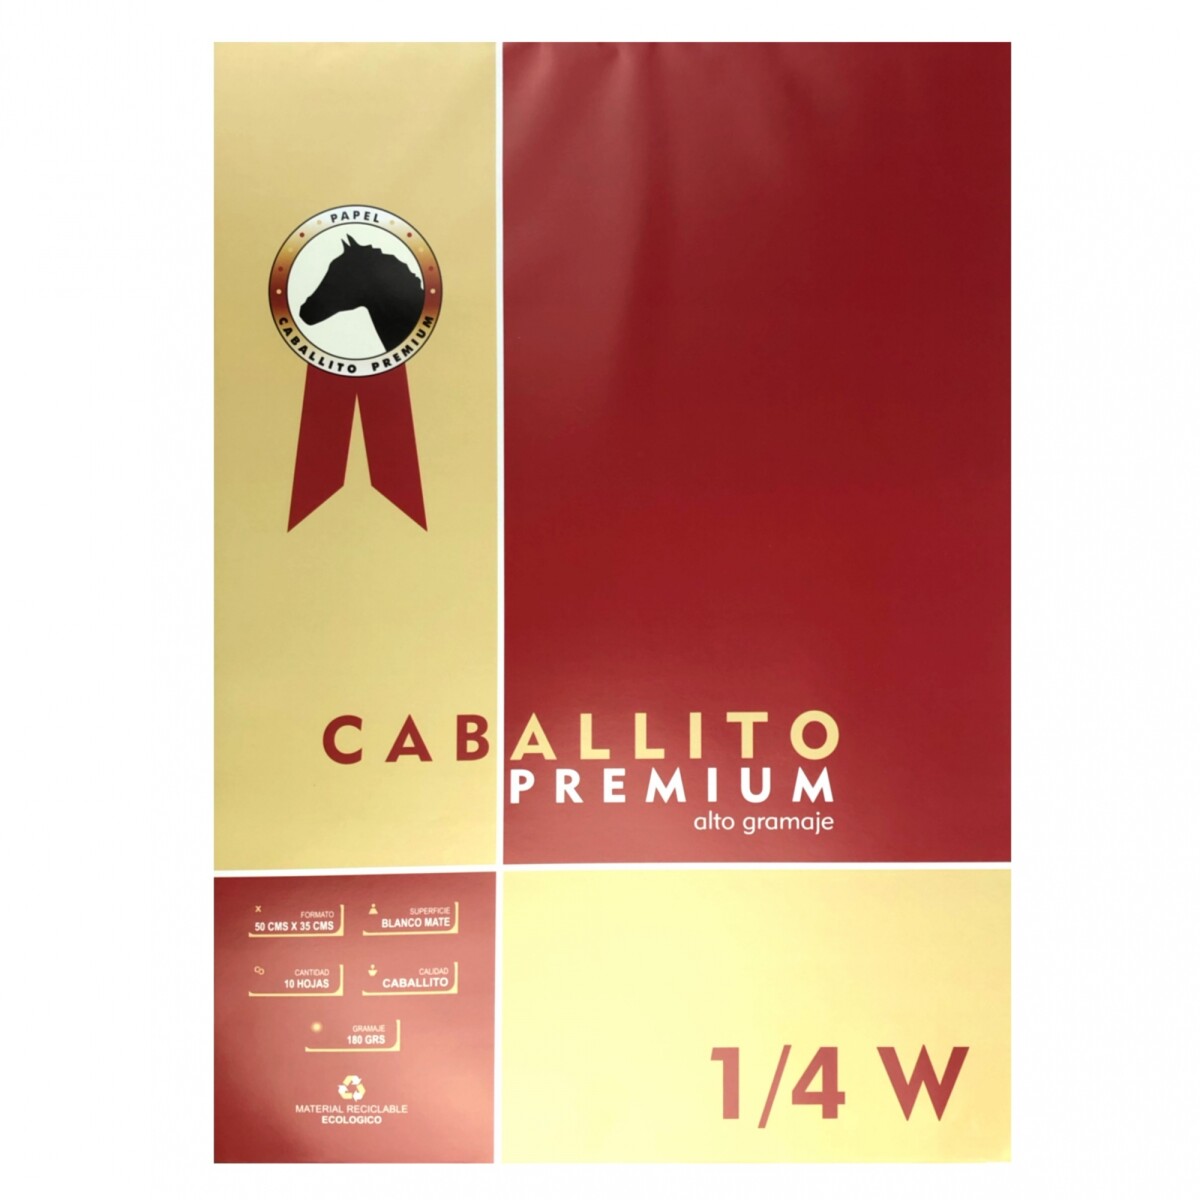 Block Caballito Premium 180 grs - 1/4 